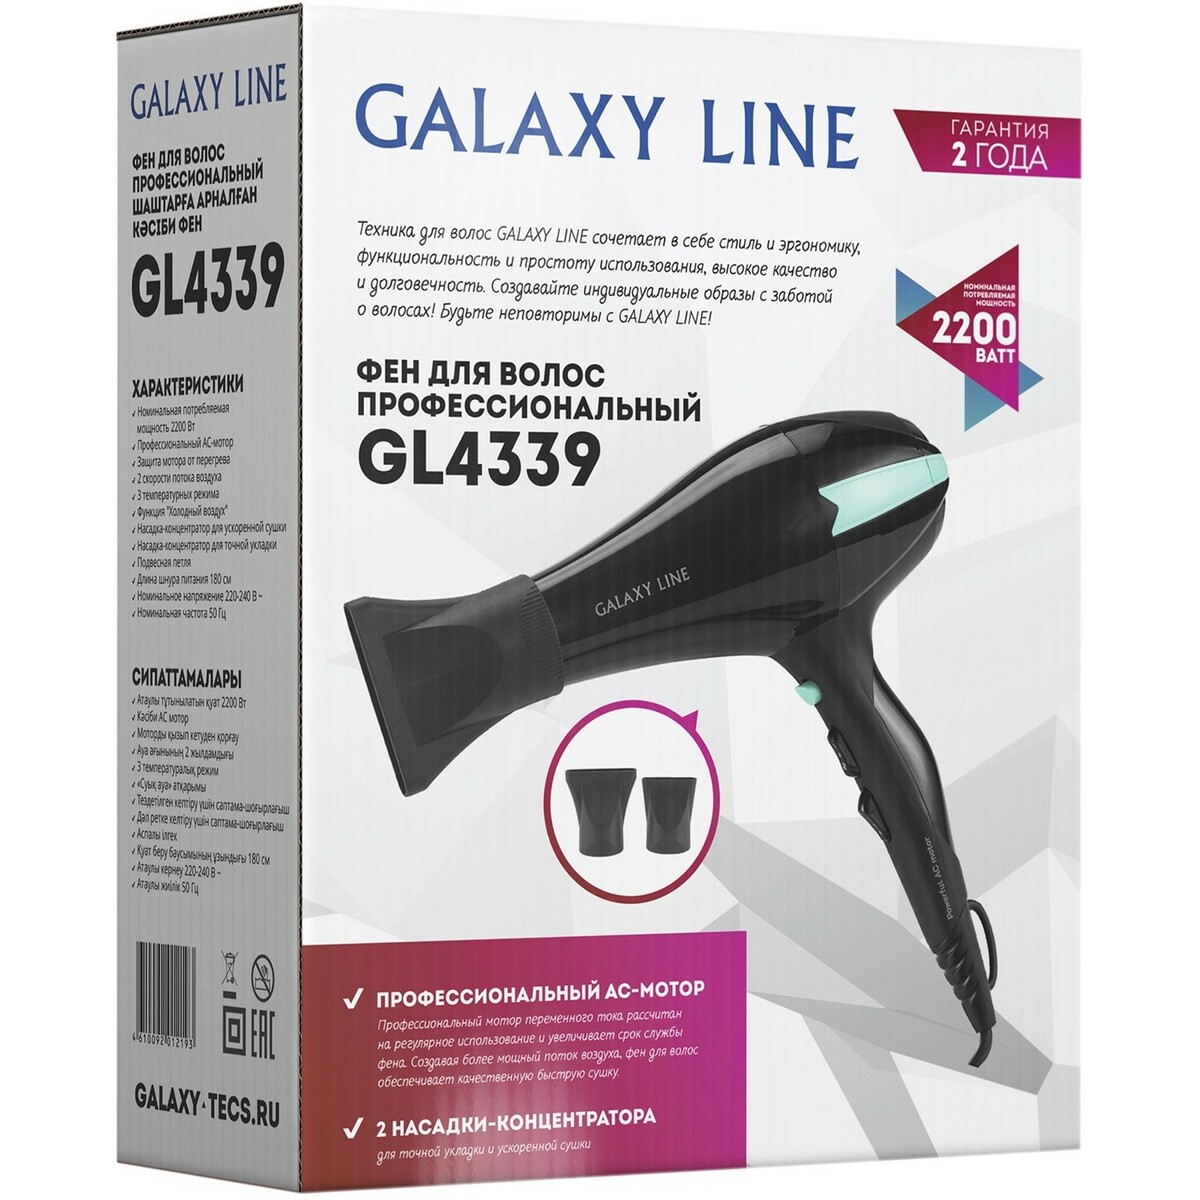 Фен GALAXY LINE GL 4339, черный